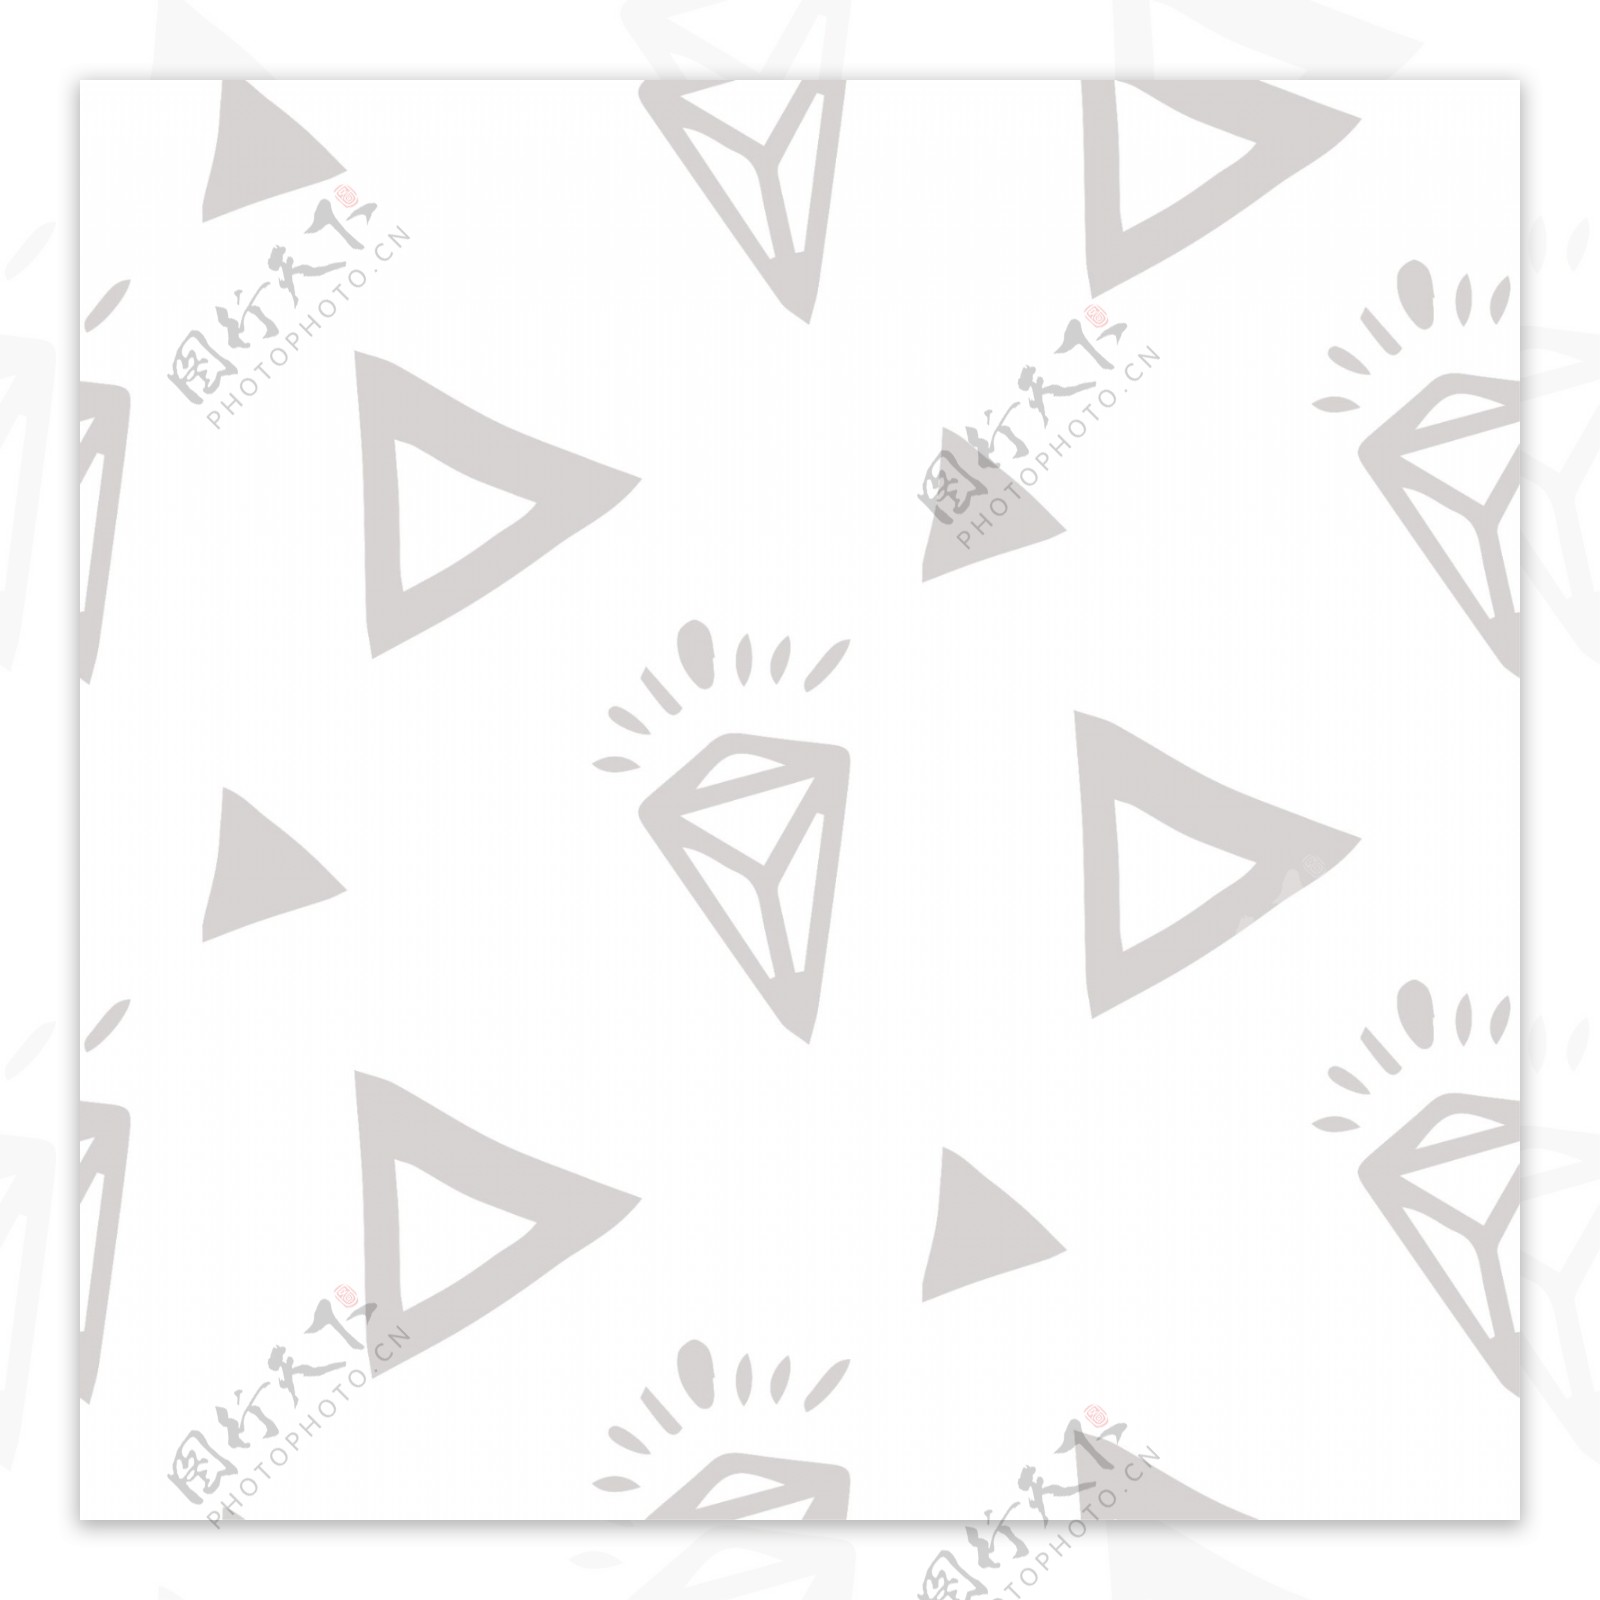 灰色三角形钻石底纹